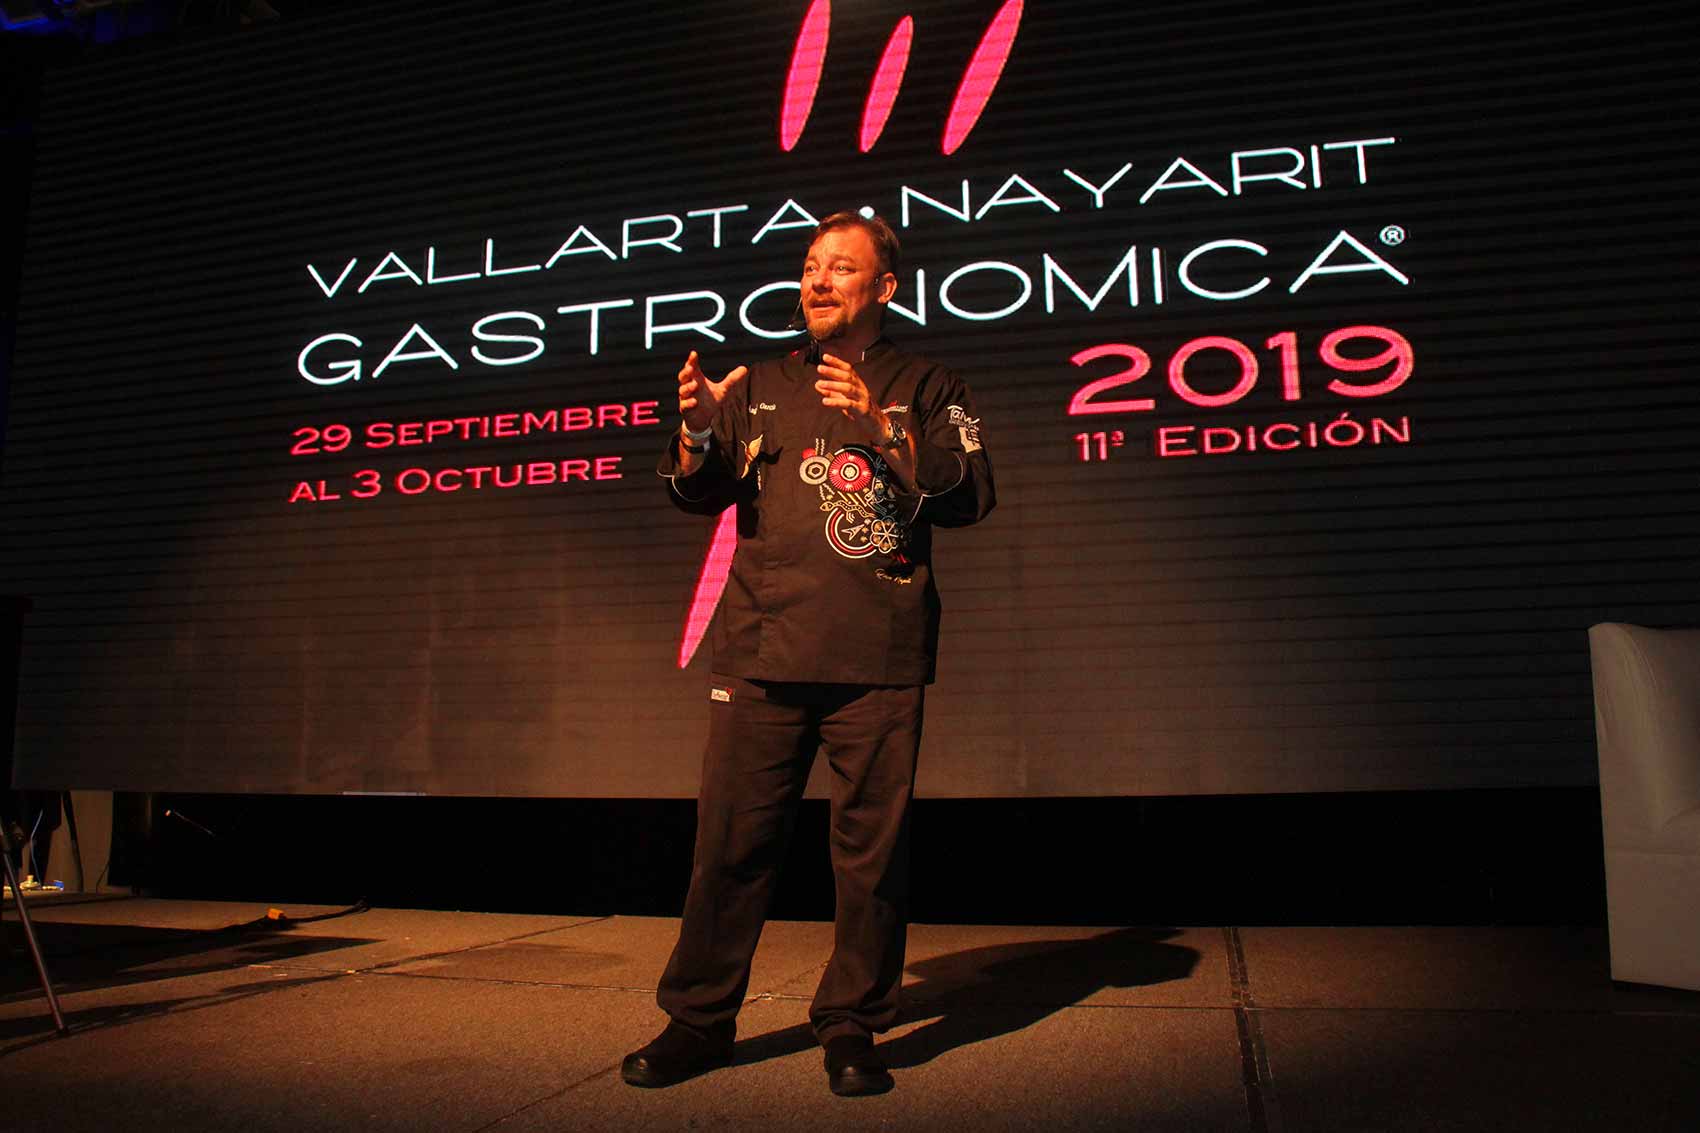 Vallarta-Nayarit-Gastronomica-2020